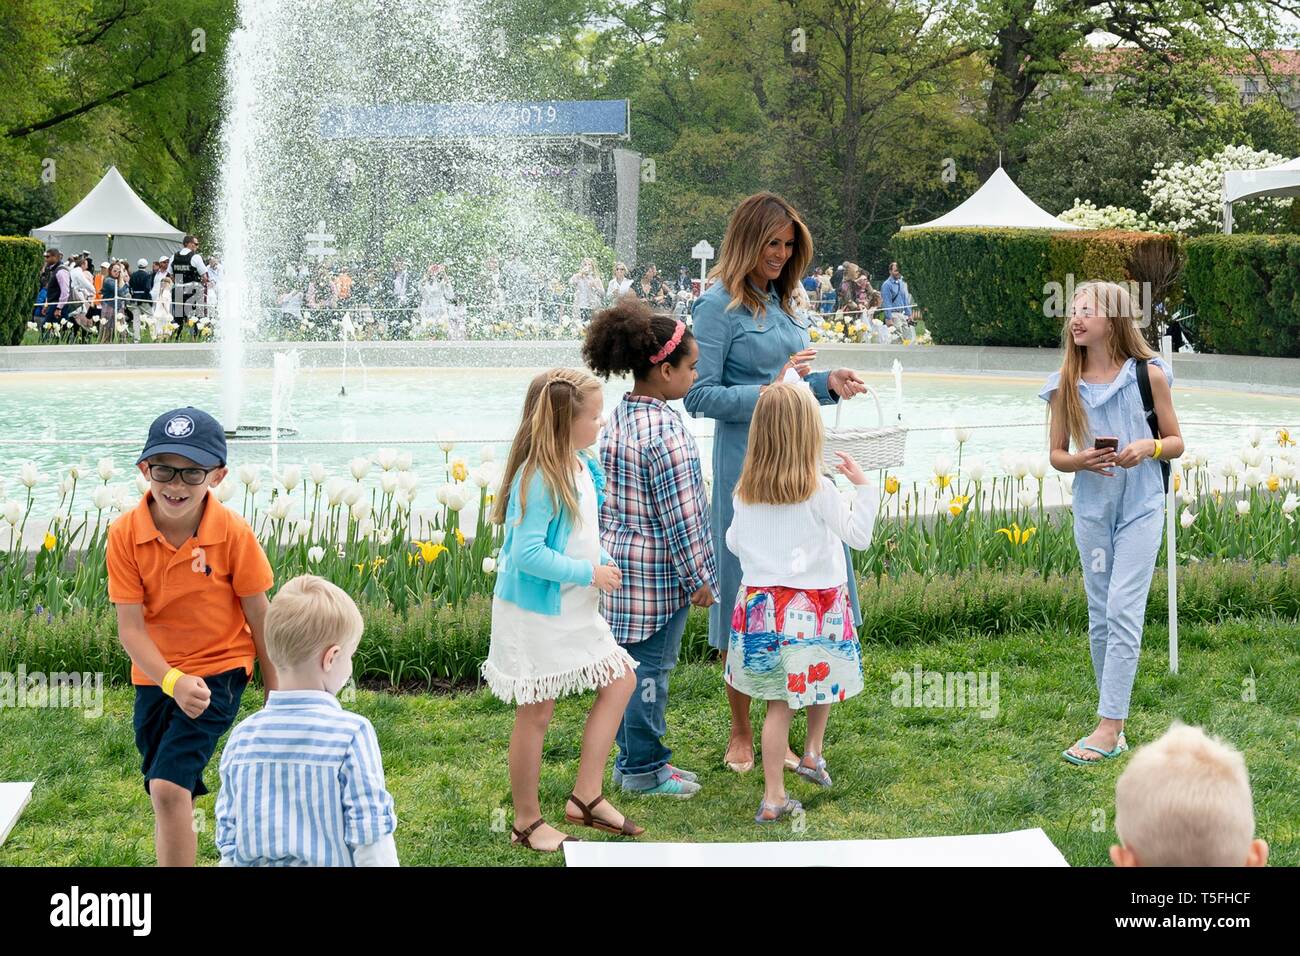 U.S prima signora Melania Trump a campana gioco durante il White House Easter Egg Roll evento sul prato Sud della Casa Bianca Aprile 22, 2019 a Washington, DC. Questa è la 141anno per le relazioni annuali di primavera evento. Foto Stock